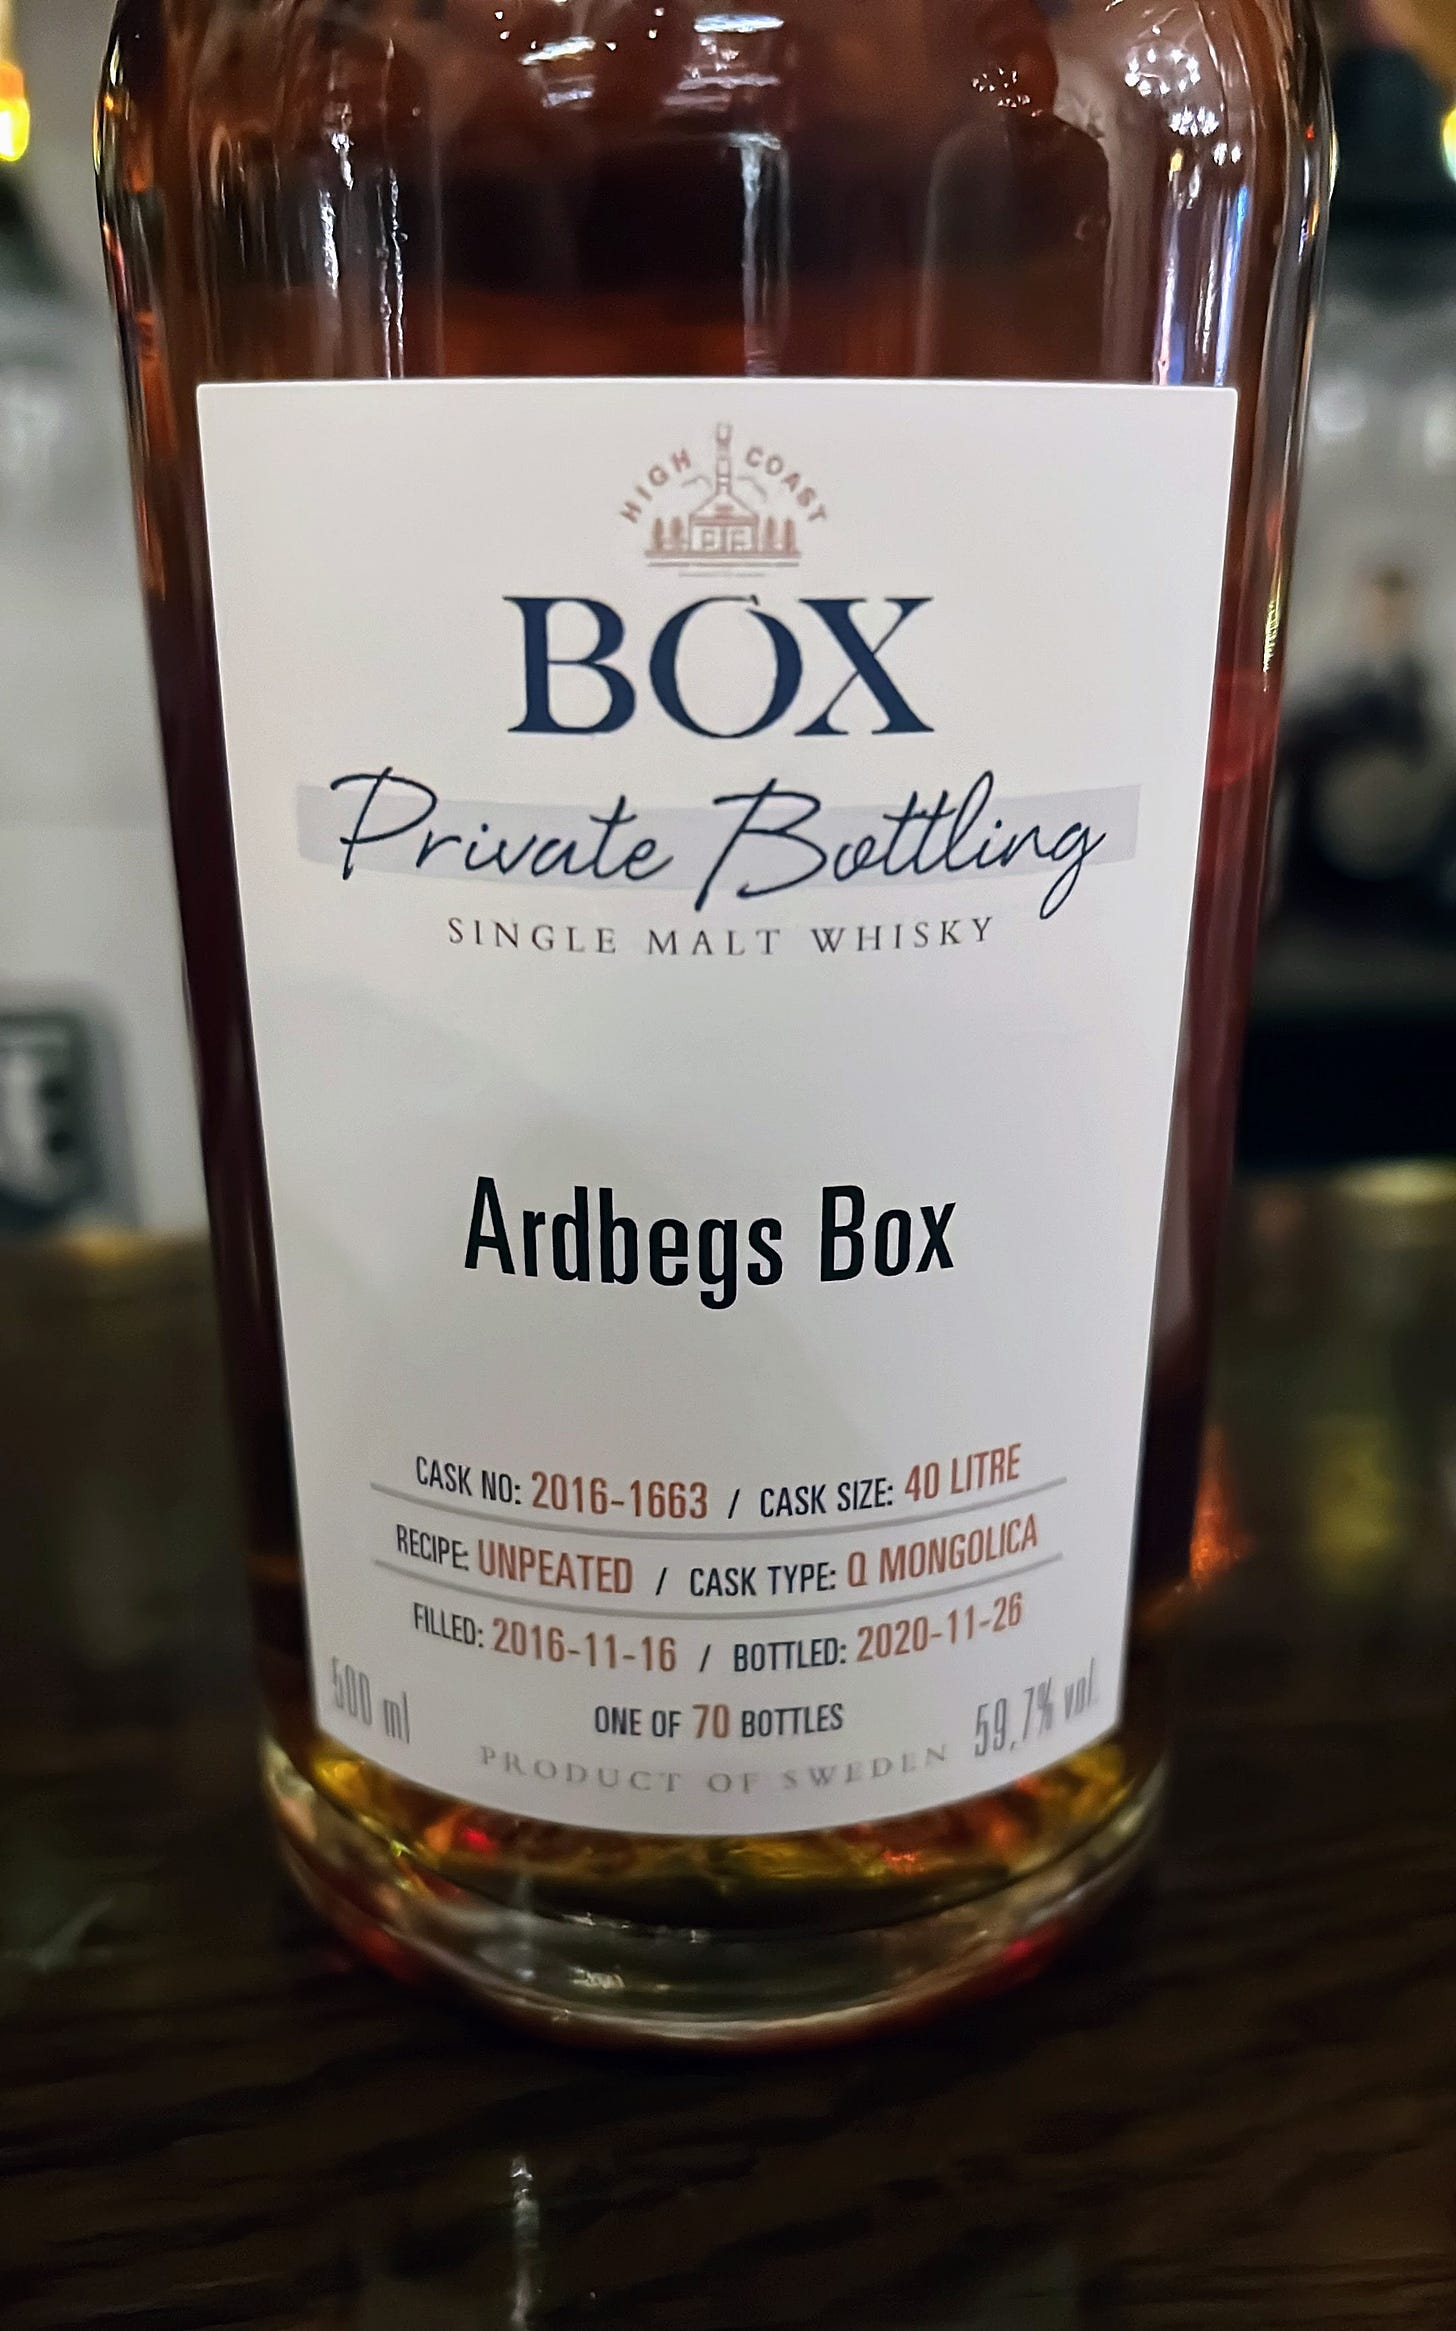 Bottle of Ardbegs Box whisky